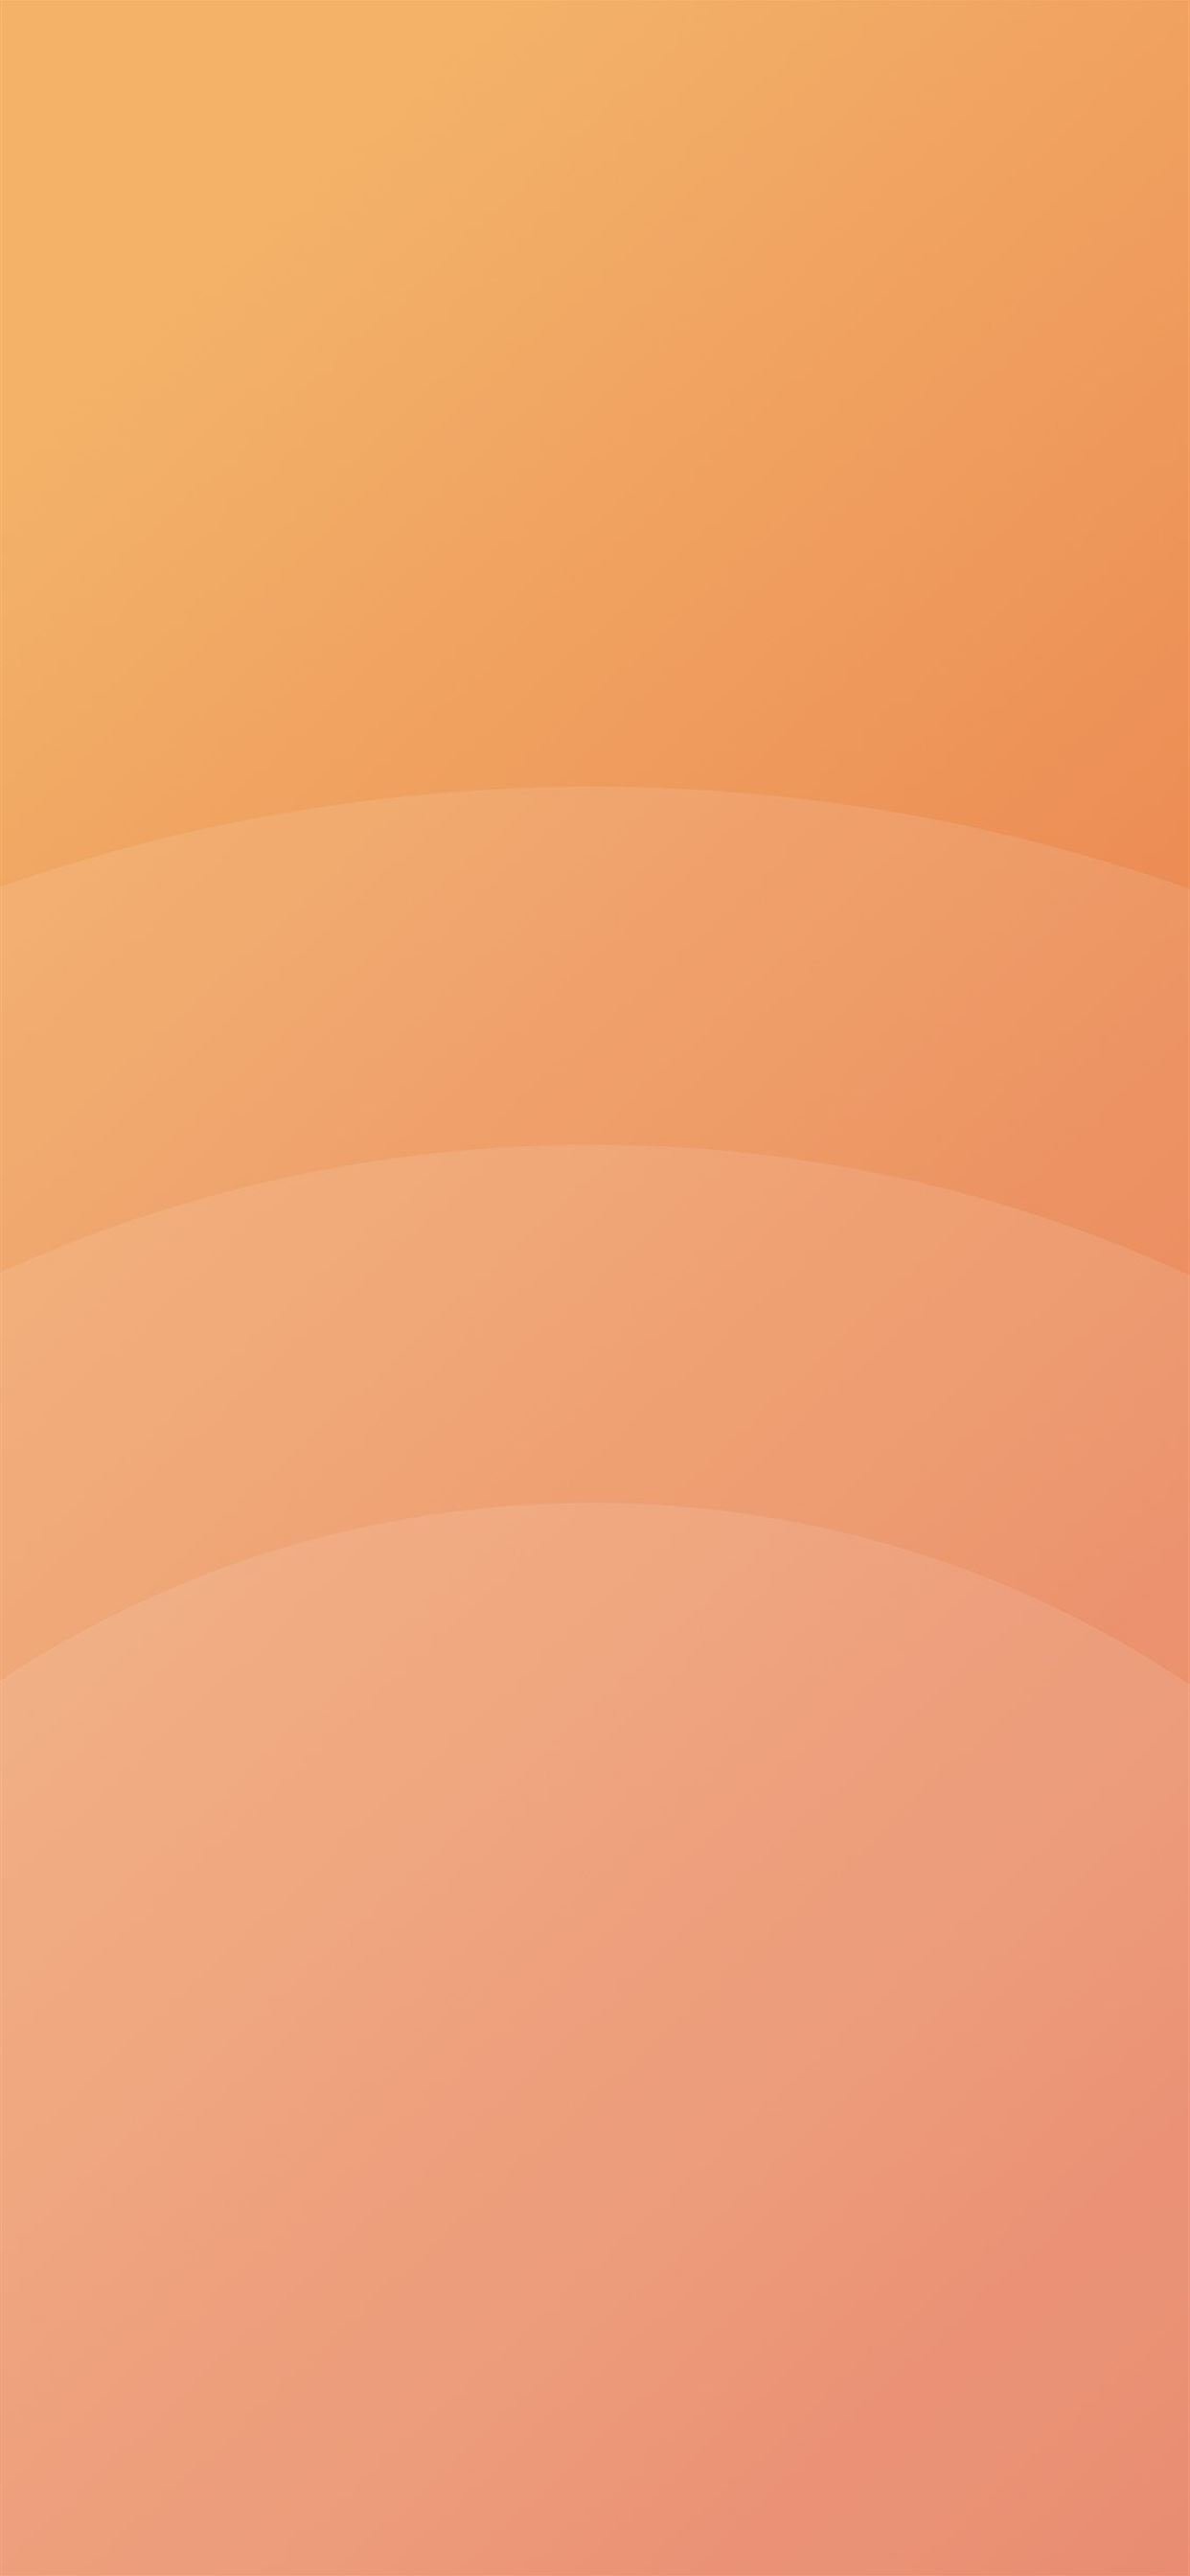 Circle orange simple minimal pattern background iPhone X Wallpaper Free Download